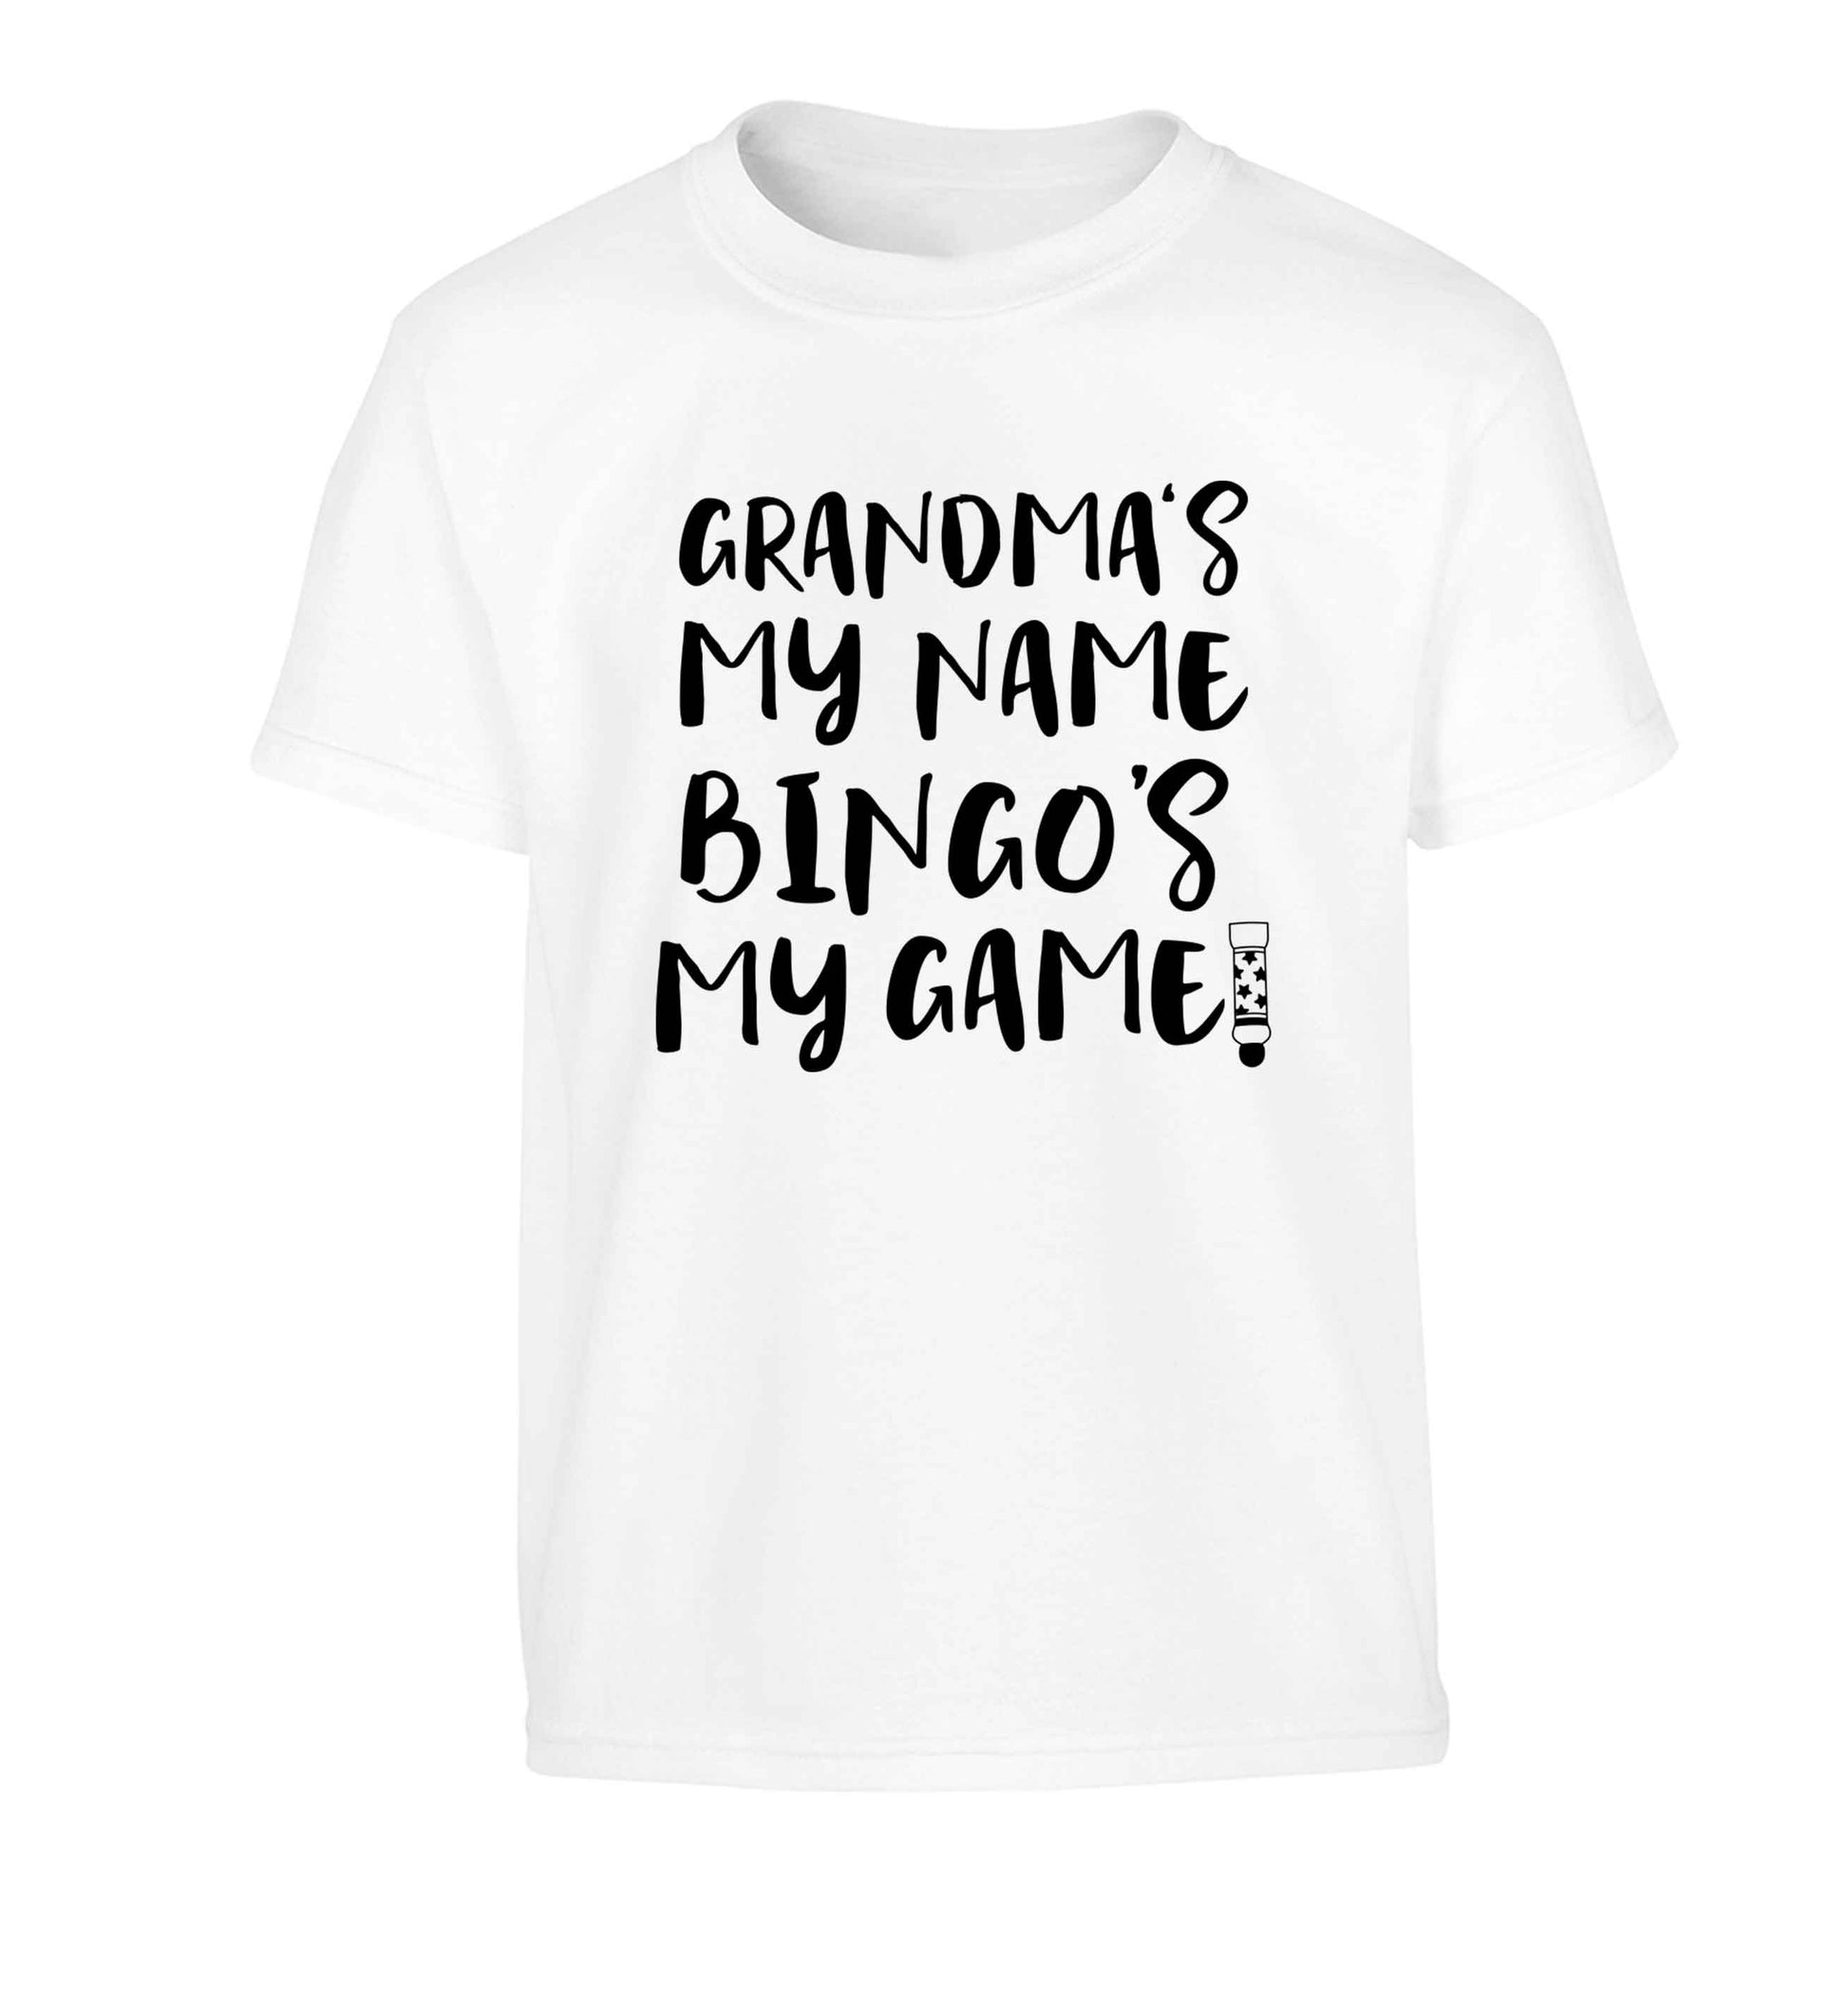 Grandma's my name bingo's my game! Children's white Tshirt 12-13 Years